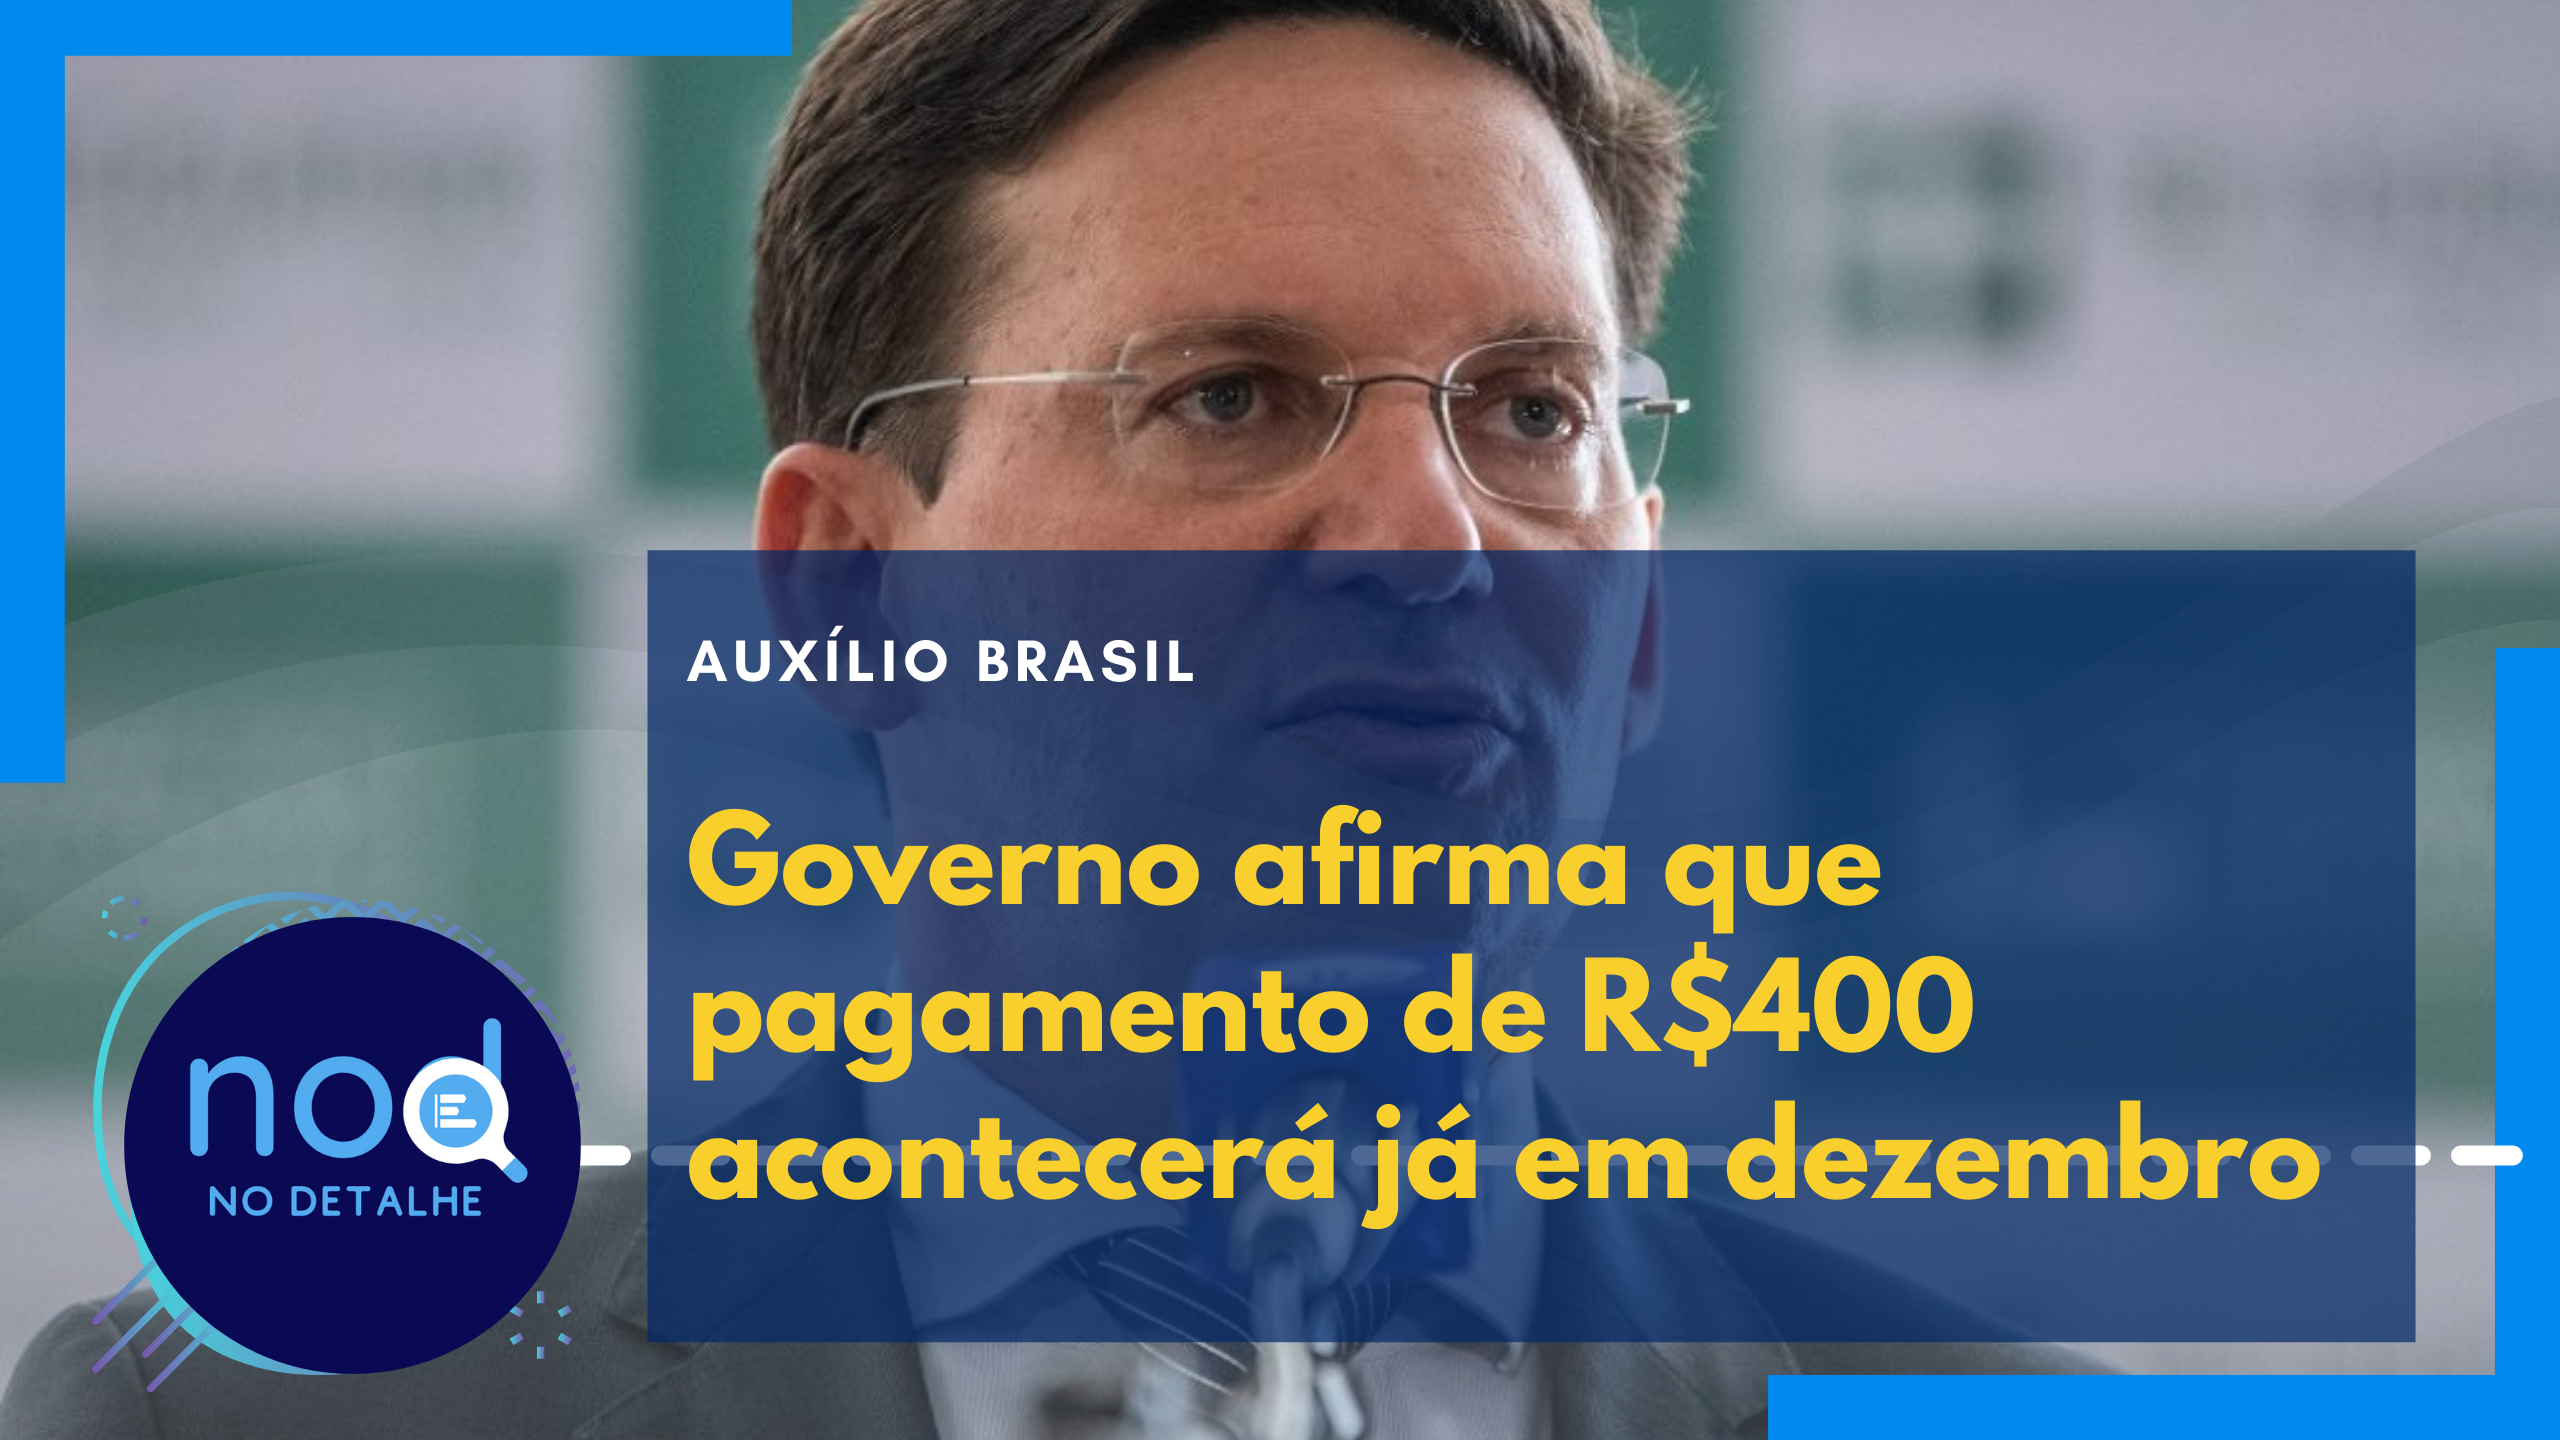 Auxílio Brasil de R$400 está garantido, segundo ministro da Cidadania João Roma